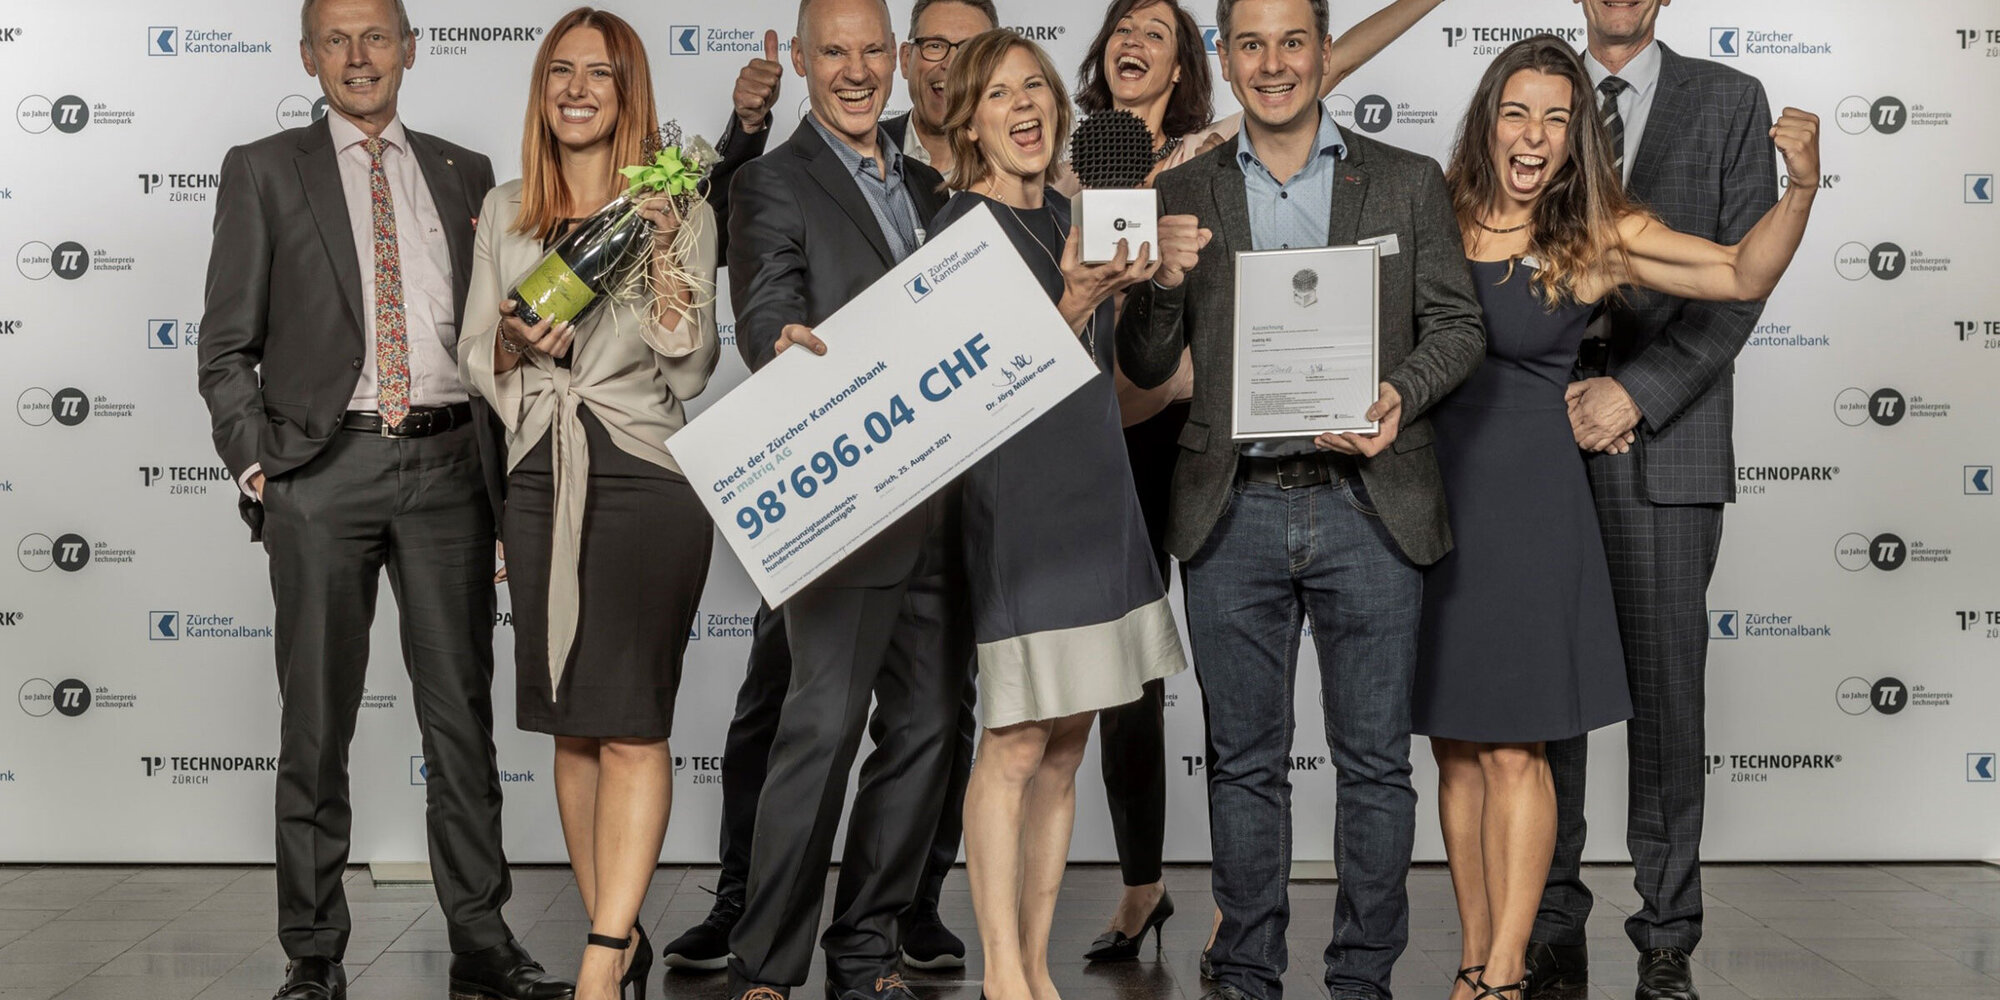 Gewinnerbild des ZKB Pionierpreis Technopark 2021: Das Team der matriq AG nimmt den prestigeträchtigen Start-up-Preis entgegen.